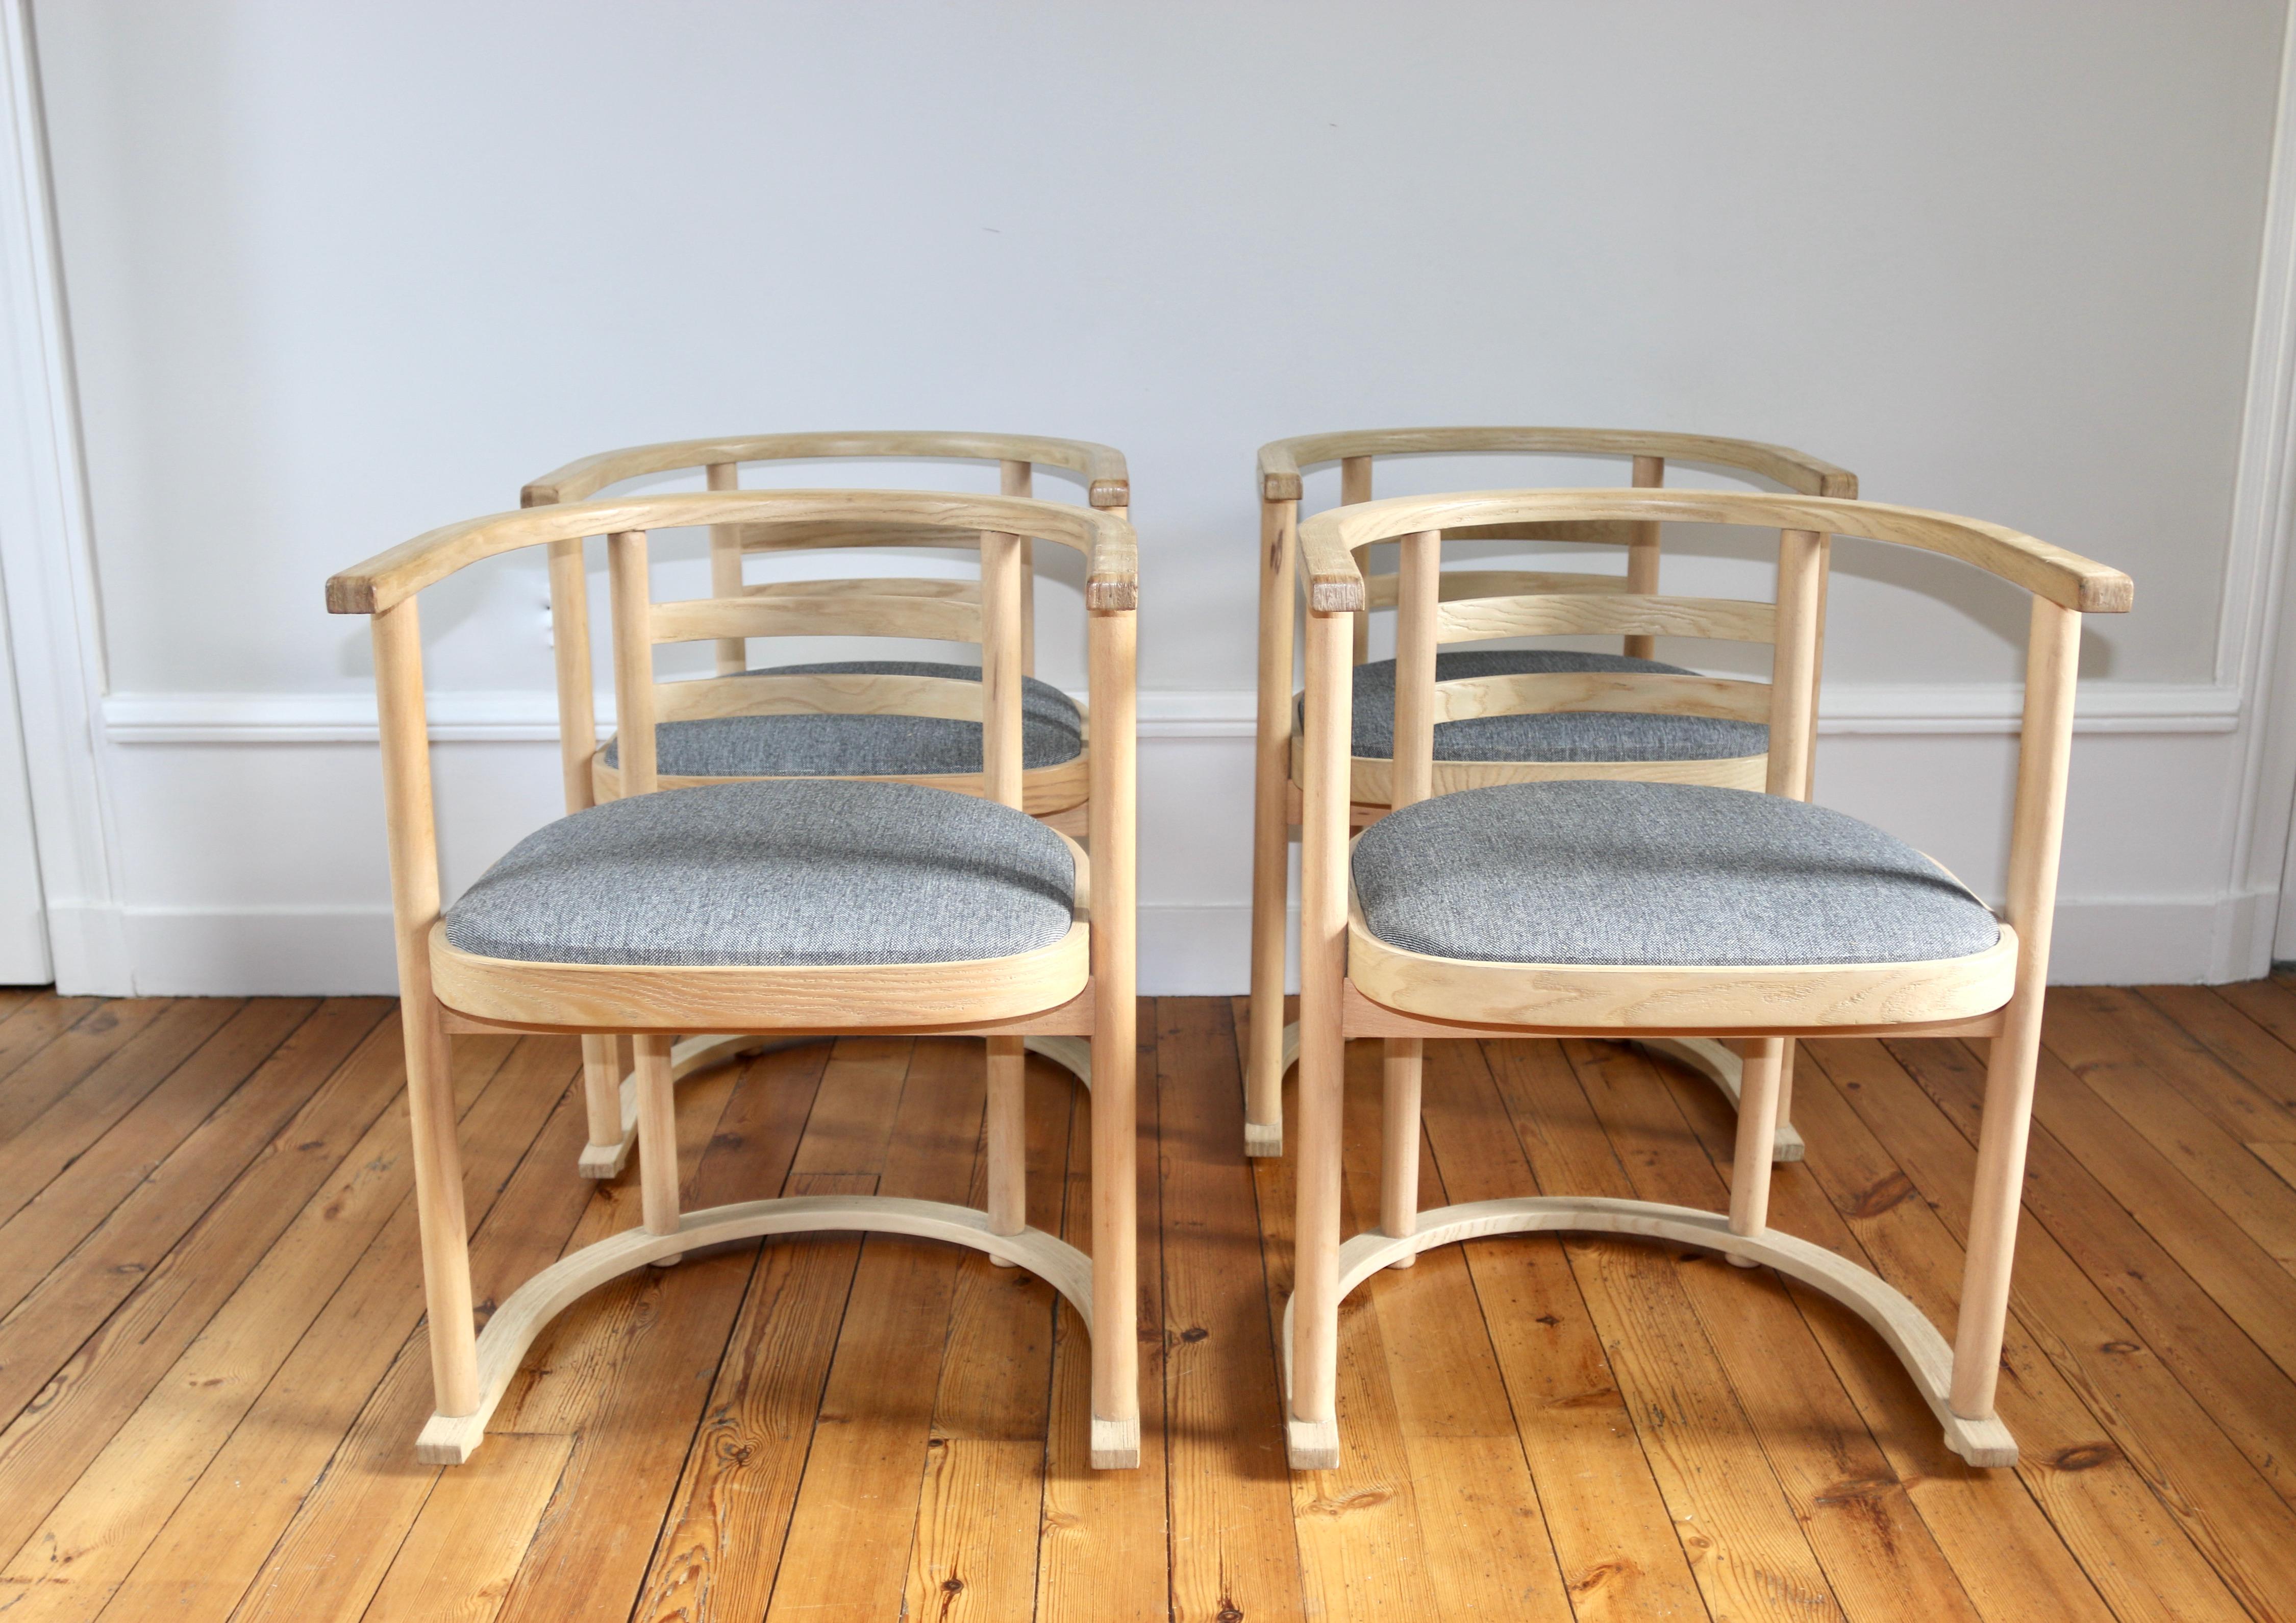 Série de 4 fauteuils/chaises Bauhaus vintage dans l'esprit de celle fabriquée par Josef Hoffman pour Thonet
celle-ci ont été fabriquées au Danemark

assises refaites en tissu gris chiné par un tapissier (mousse et tissu)

Dimensions : profondeur 48